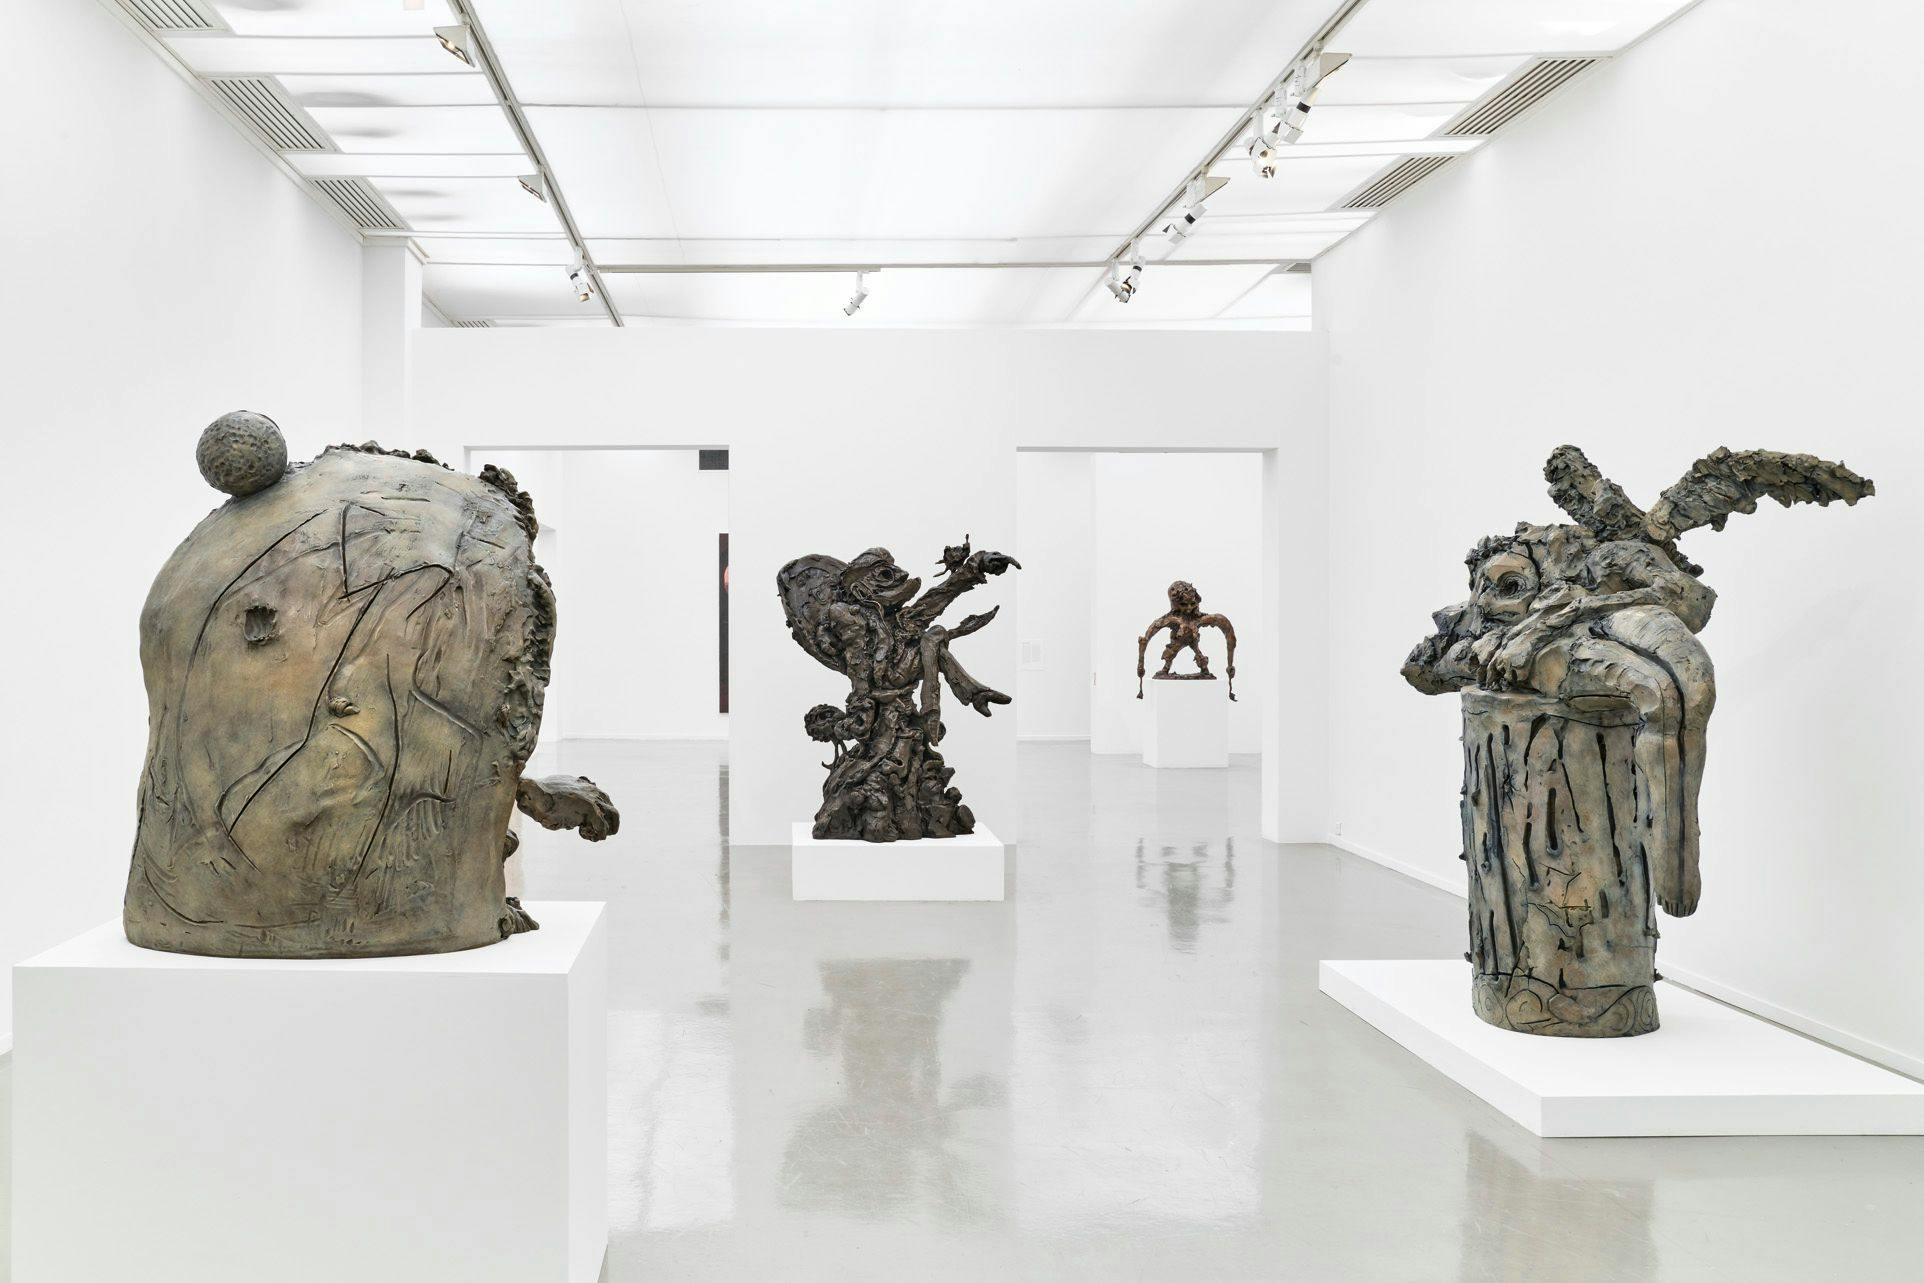 Installation view of the exhibition "Dana Schutz: Le monde visible," at the Musée d’art Moderne de Paris, 2023